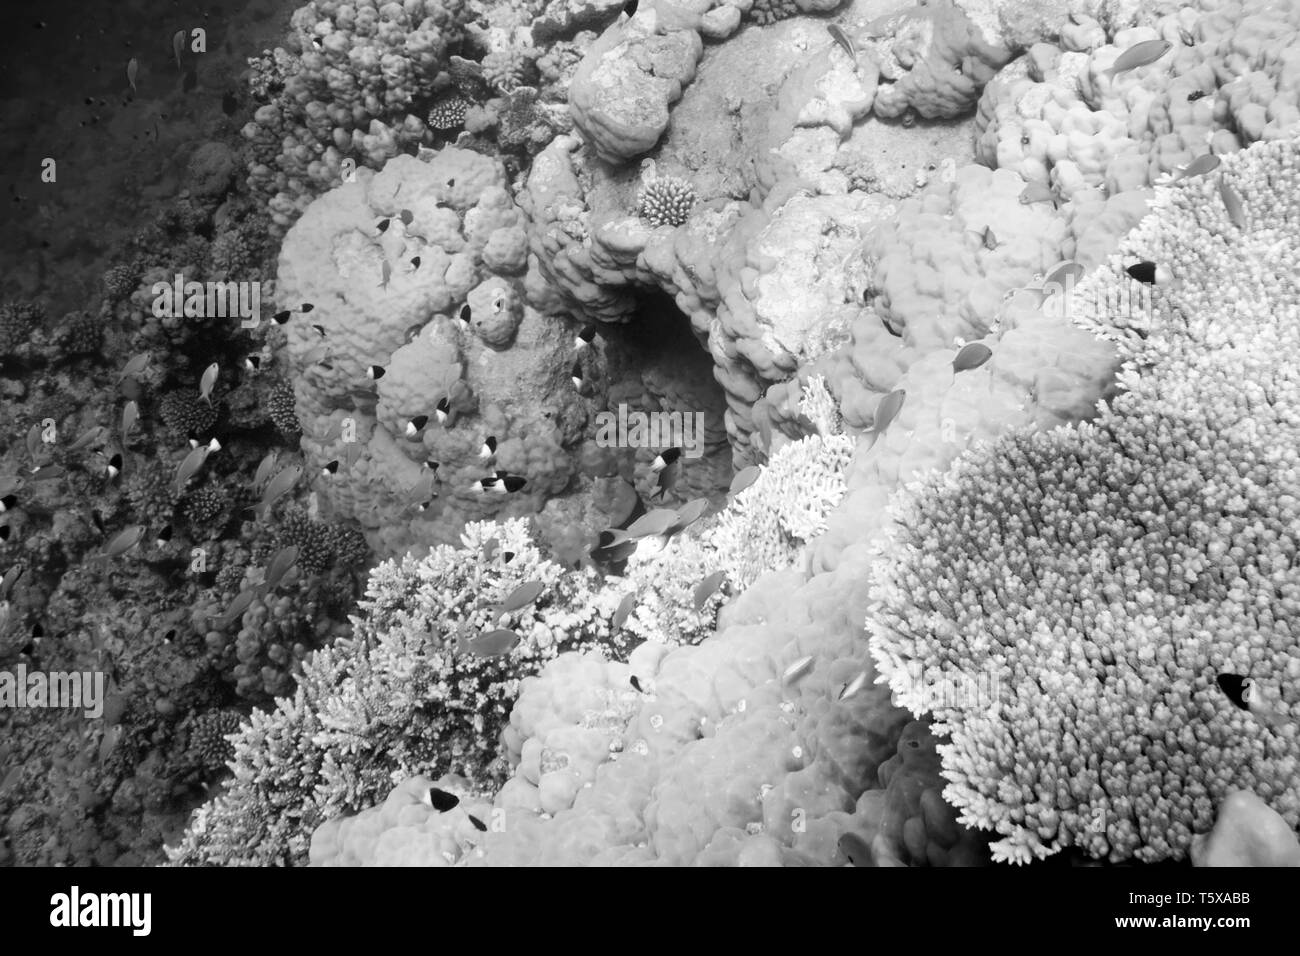 La vita subacquea del Mar Rosso in Egitto. I pesci di acqua salata e la barriera corallina. In una caverna nel mare profondo. Bl;ack e foto in bianco Foto Stock